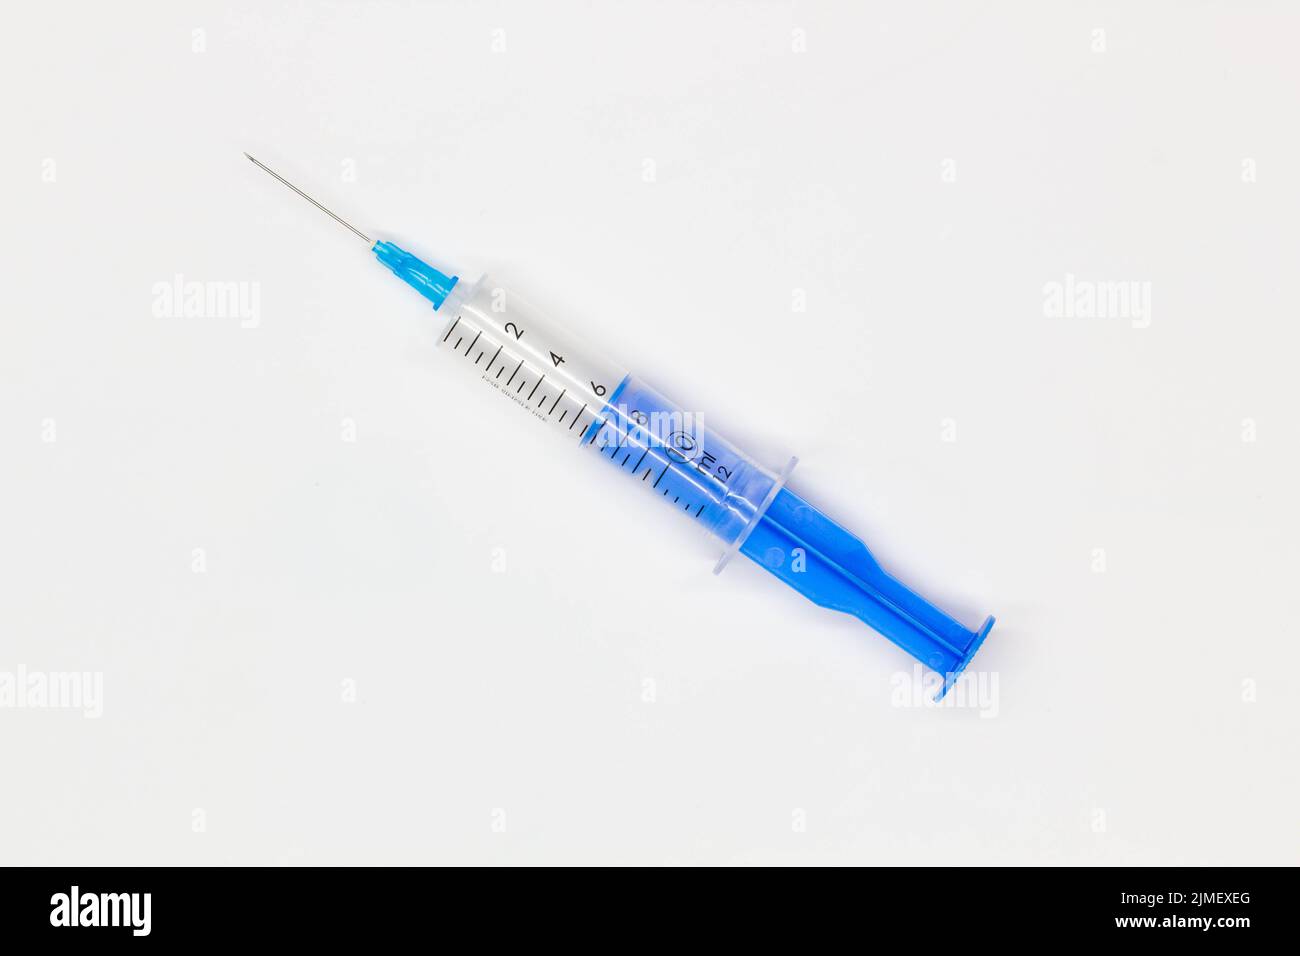 Siringa monouso medica blu per iniezione su sfondo bianco. Strumento medico per la vaccinazione. Siringa da 10 ml per vaccino COVID-19. Medico Foto Stock